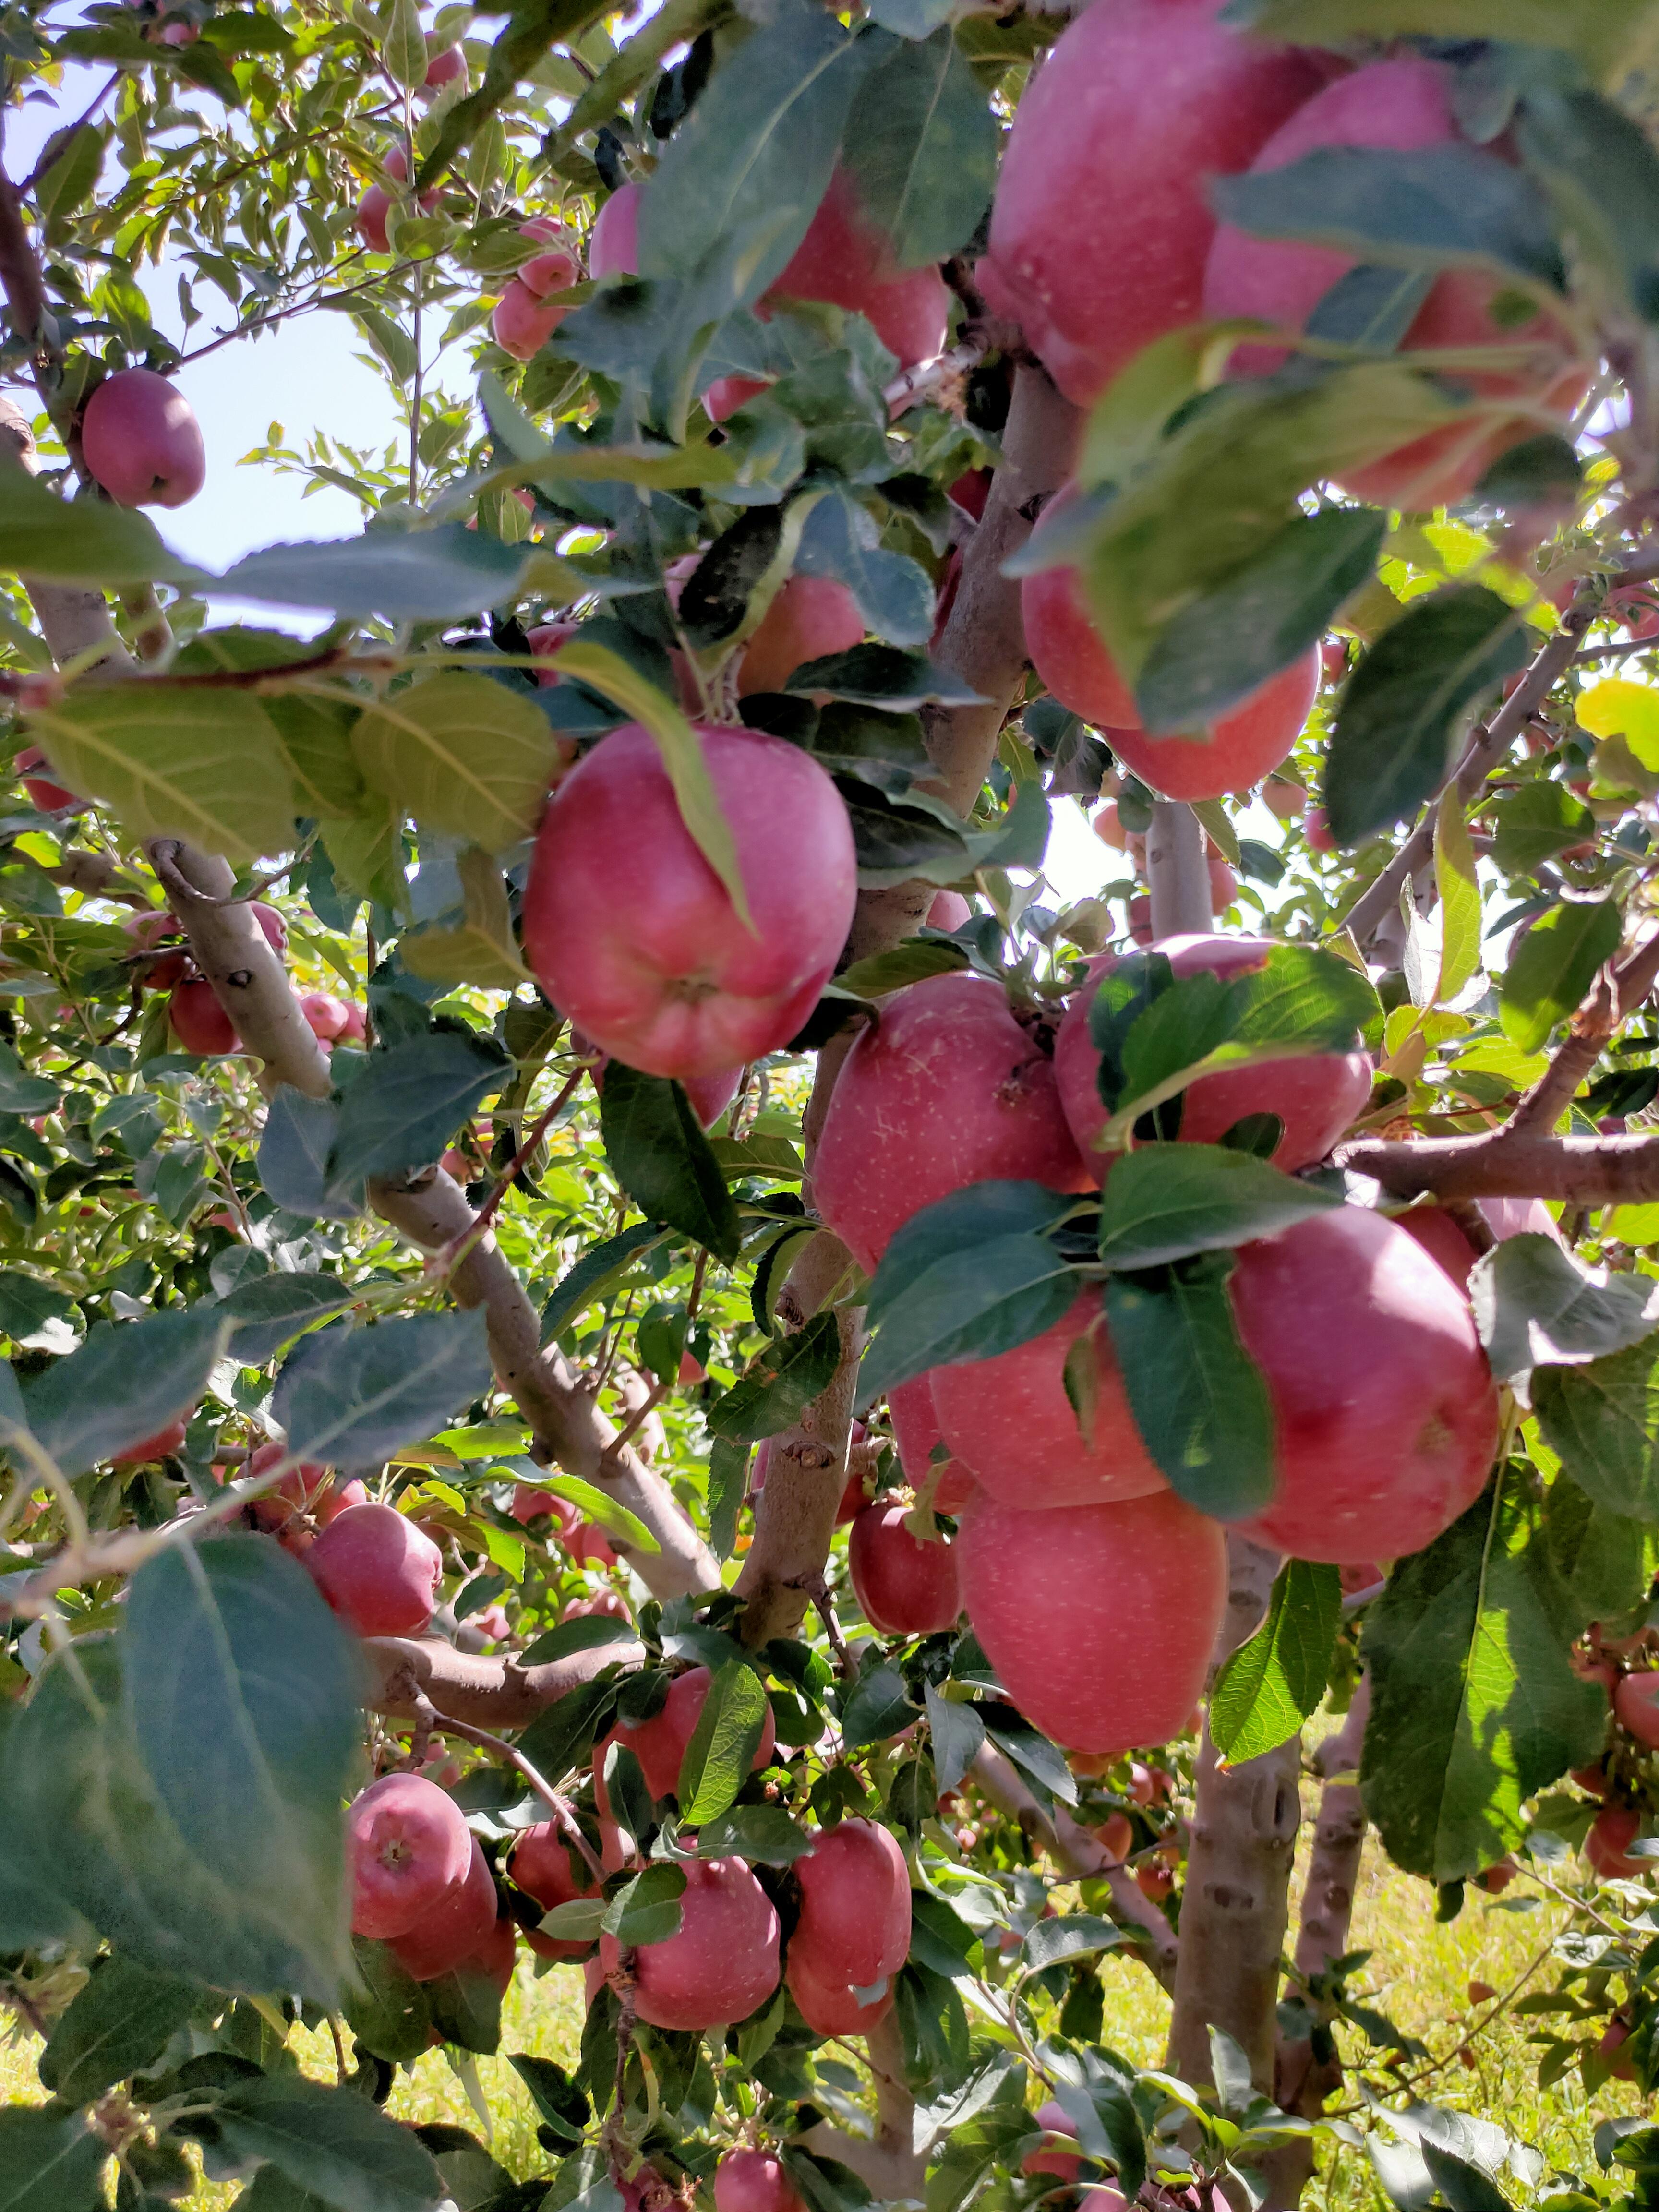 Elma - Aykut Elmaci tarafından verilen satılık starkrimson delicious çeşidi elma  ilanını ve diğer satılık elma ilanlarını tarimziraat.com adresinde bulabilirsiniz